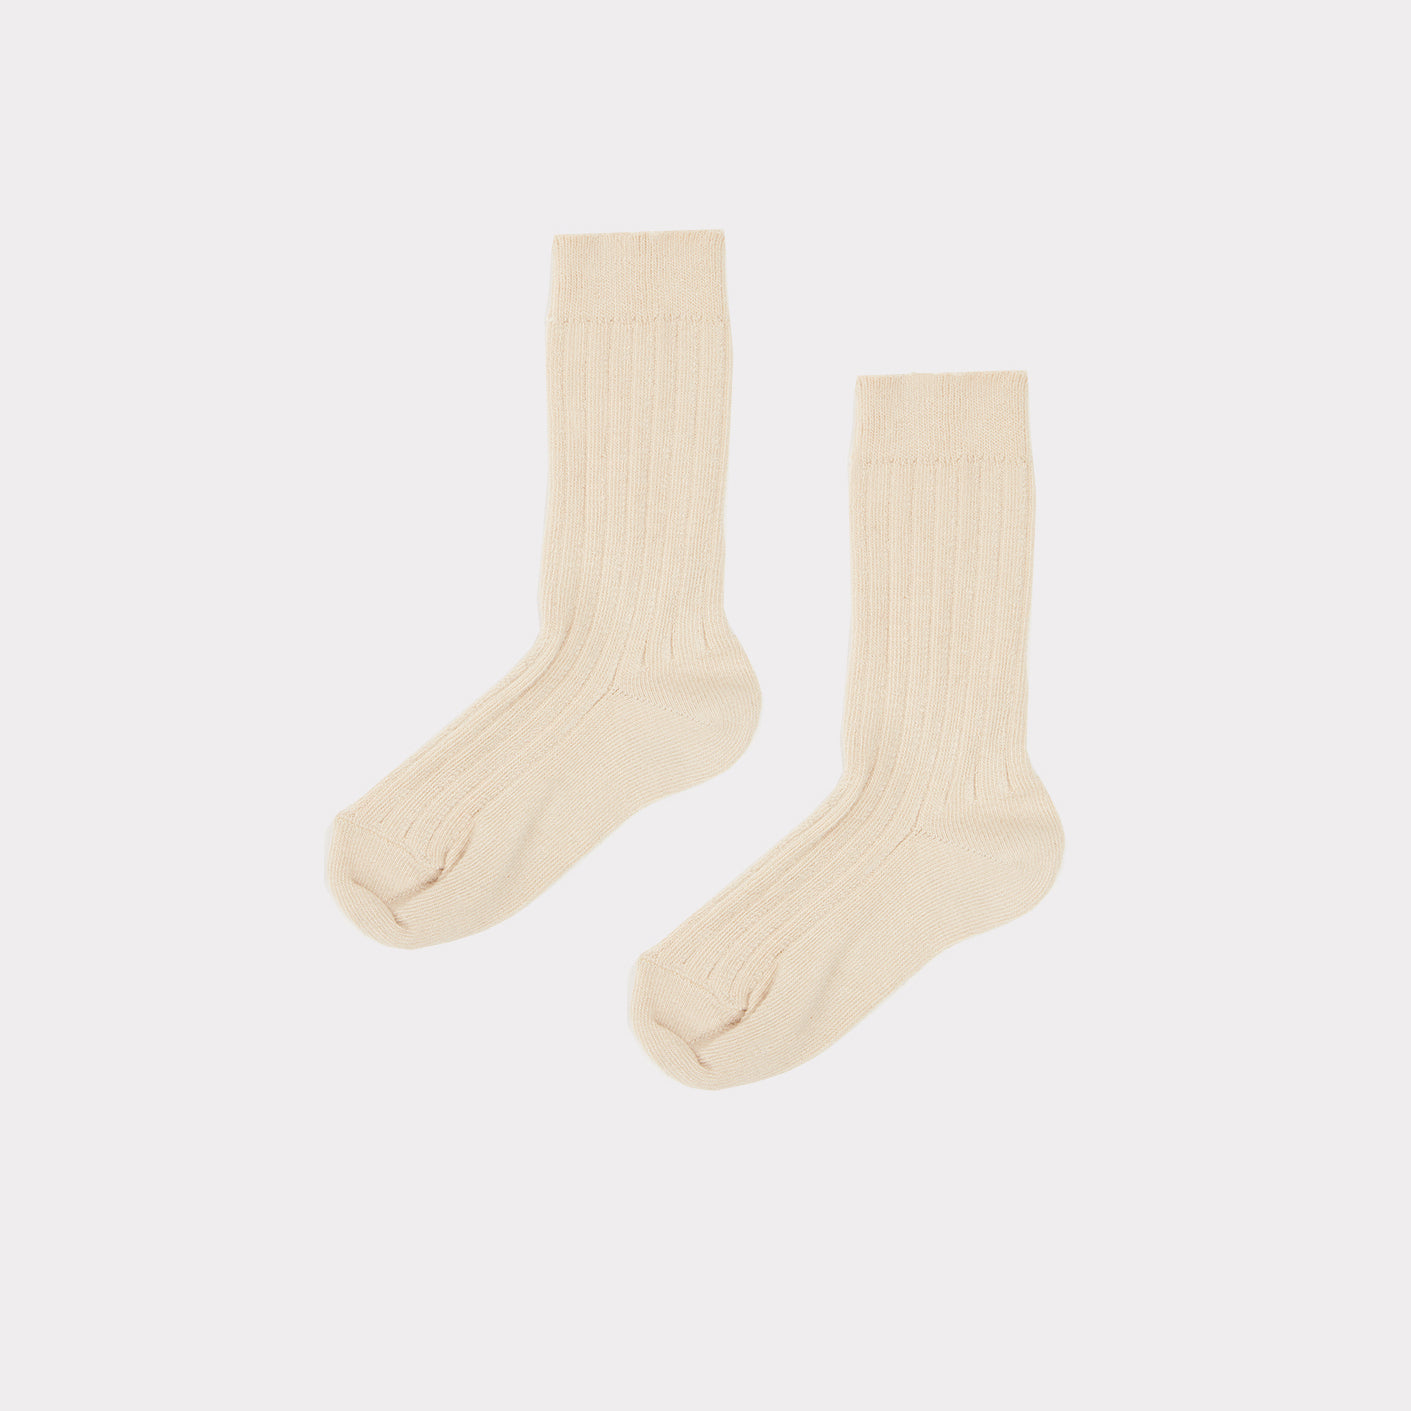 Boys & Girls White Cotton Socks